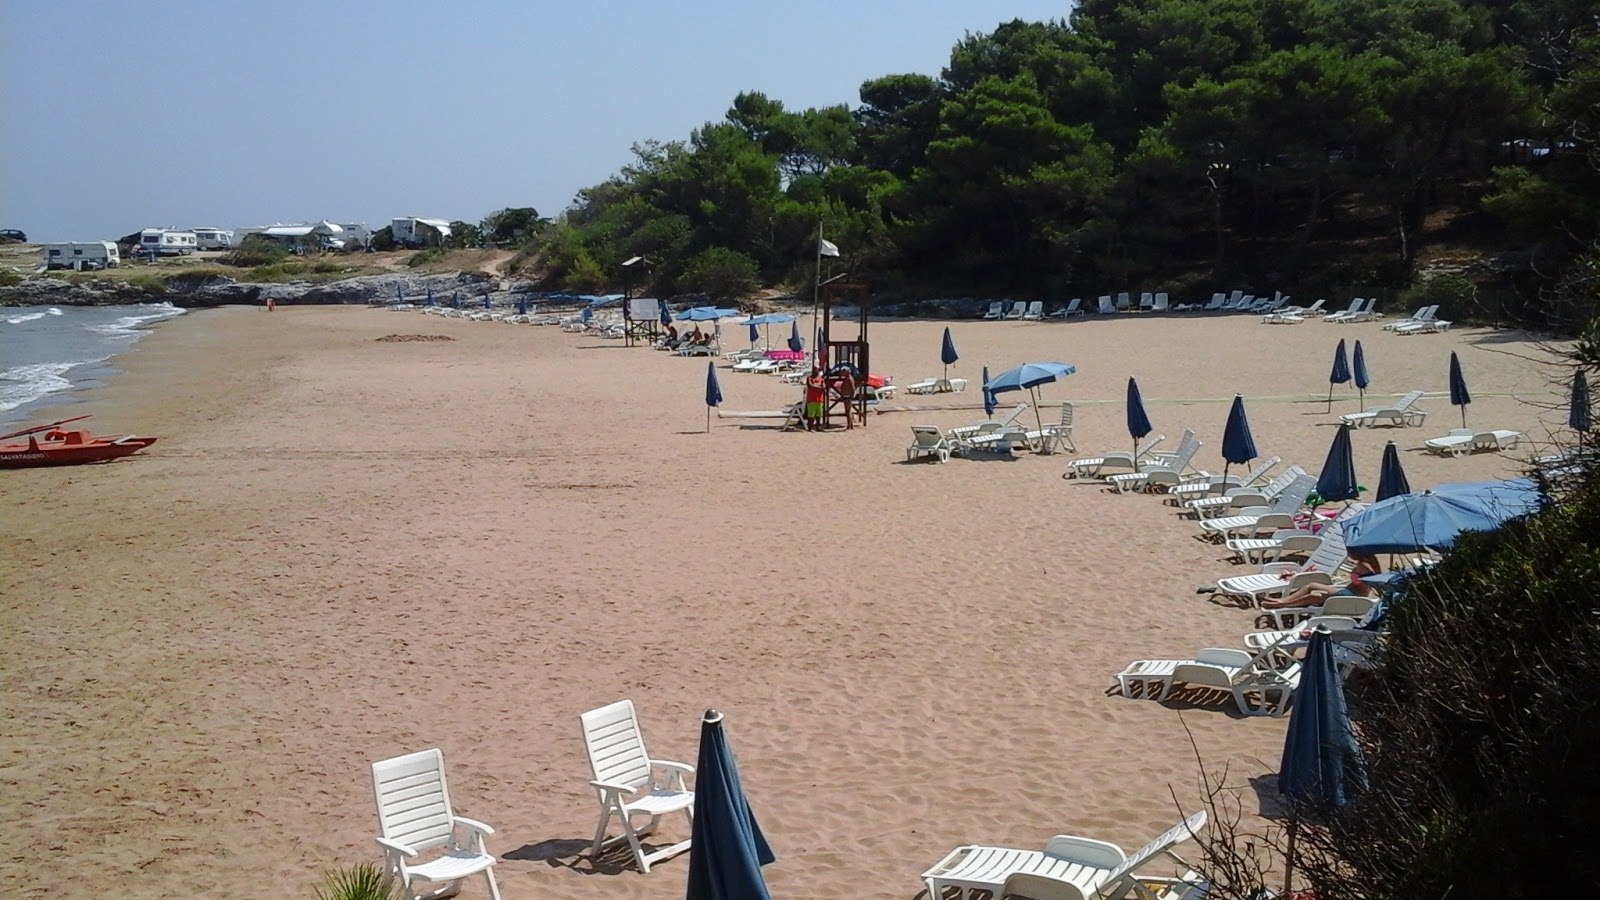 Spiaggia di Braico'in fotoğrafı çok temiz temizlik seviyesi ile